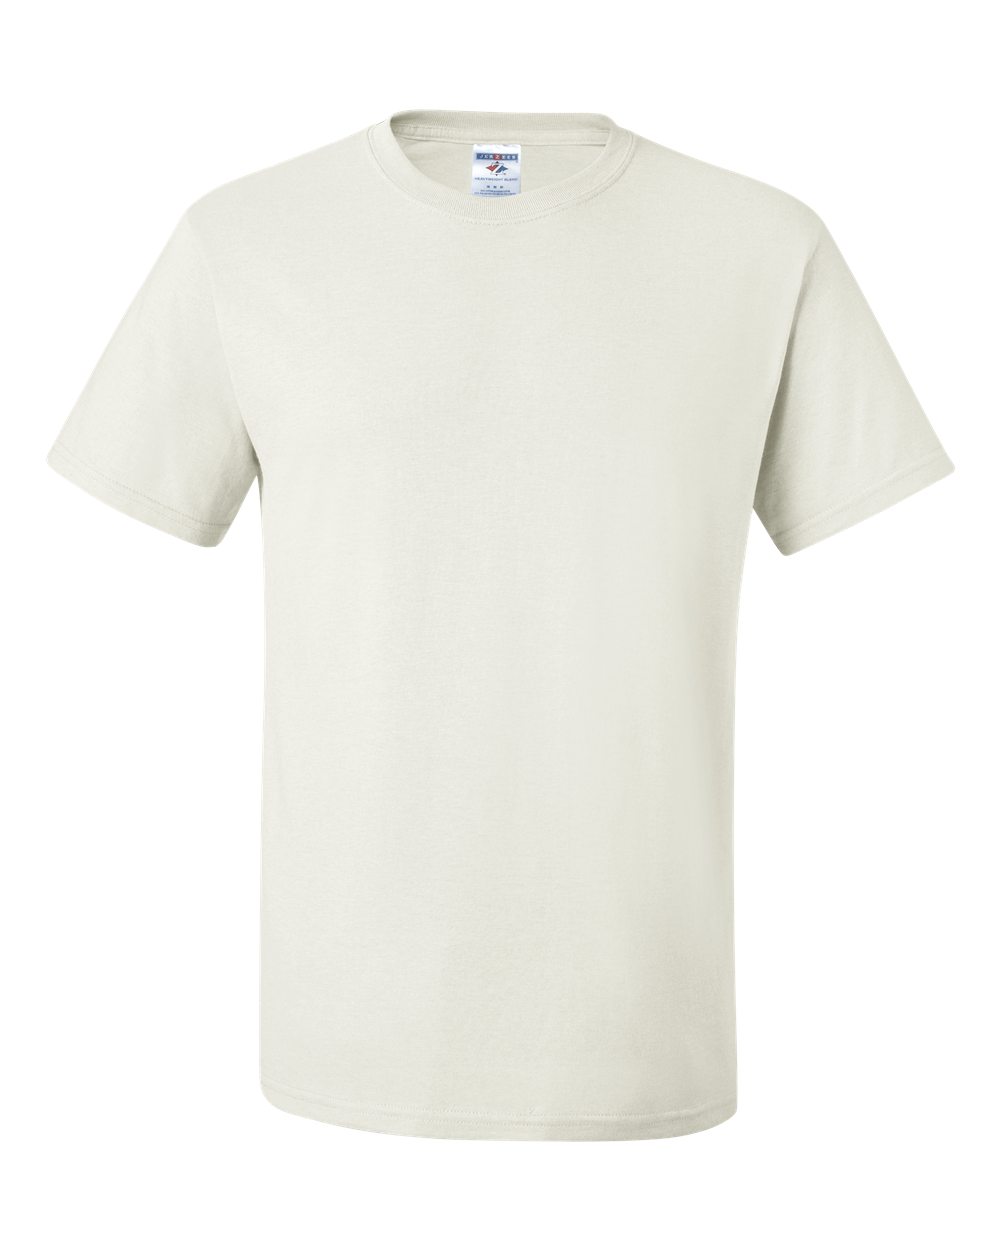 Jerzees Men's T-Shirt - Navy - XL